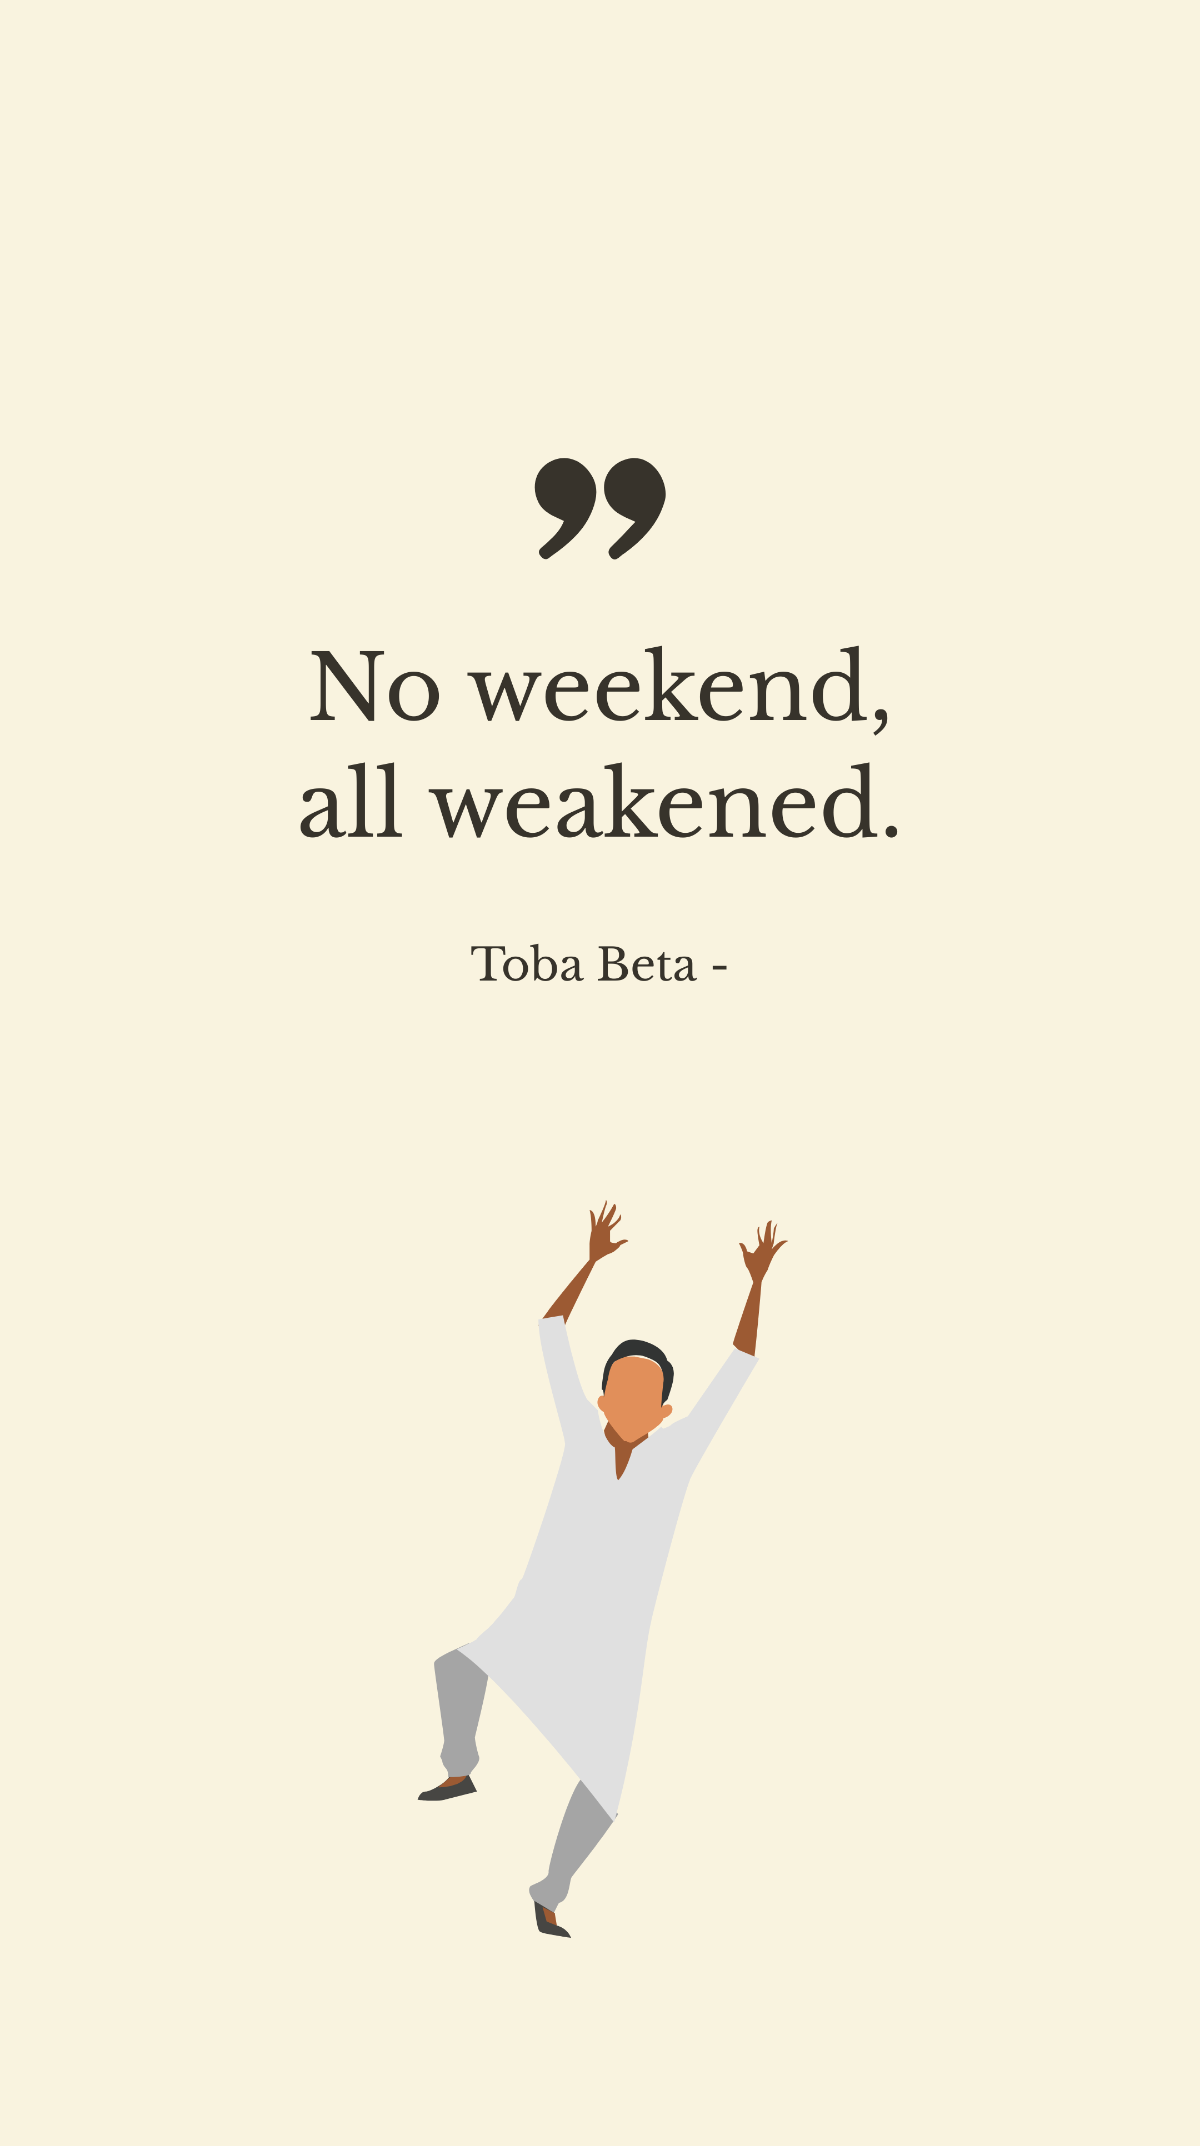 Toba Beta - No weekend, all weakened.